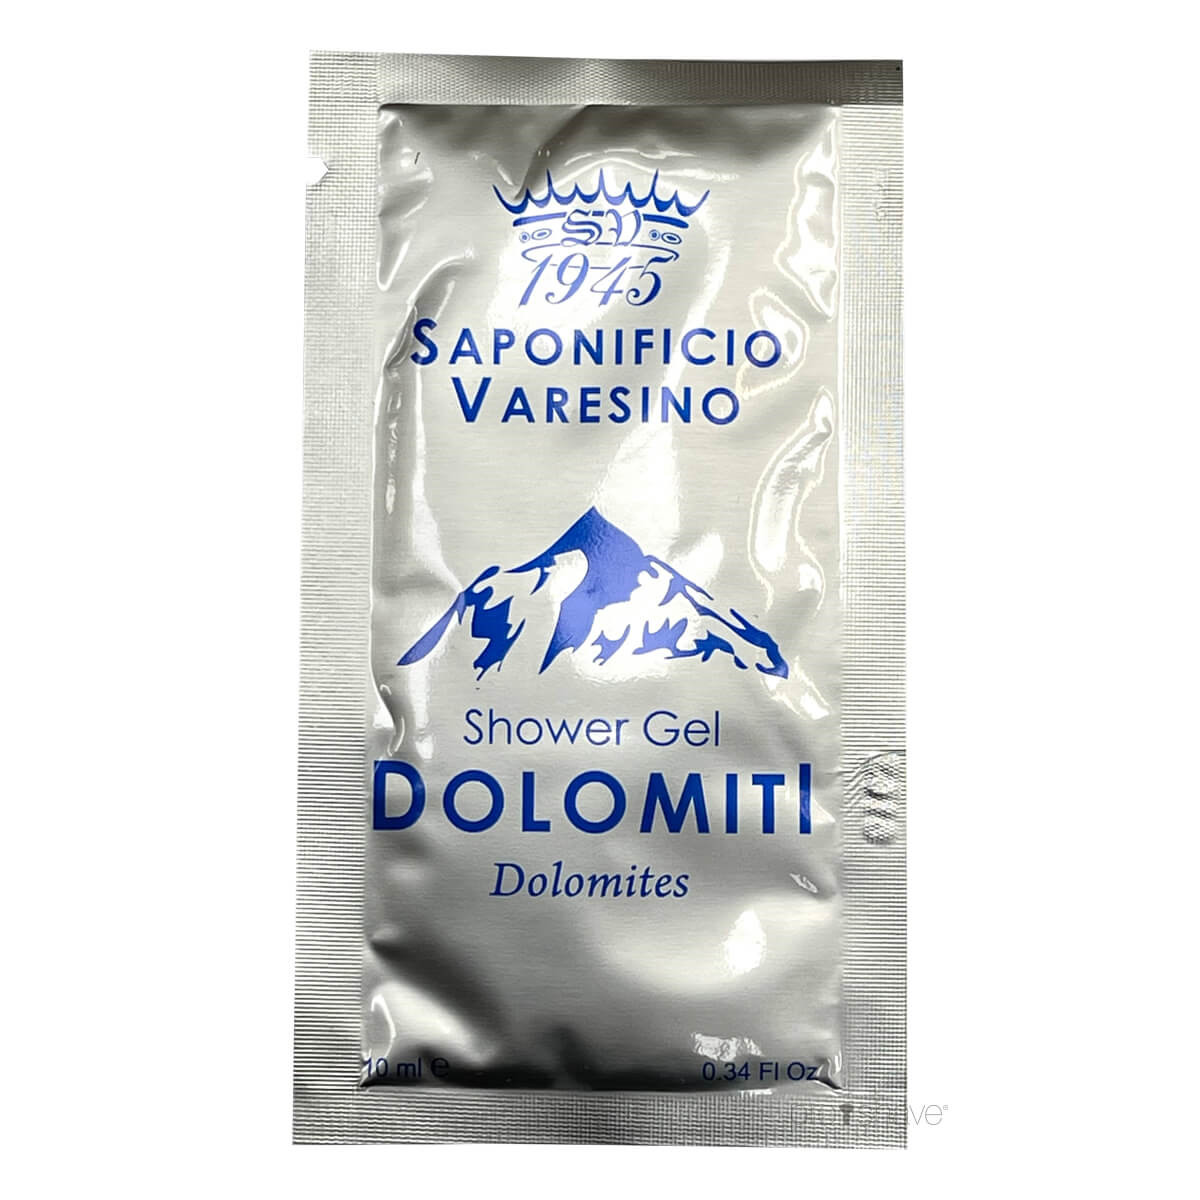 Billede af Saponificio Varesino Shower Gel, Dolomiti, Sample, 10 ml.